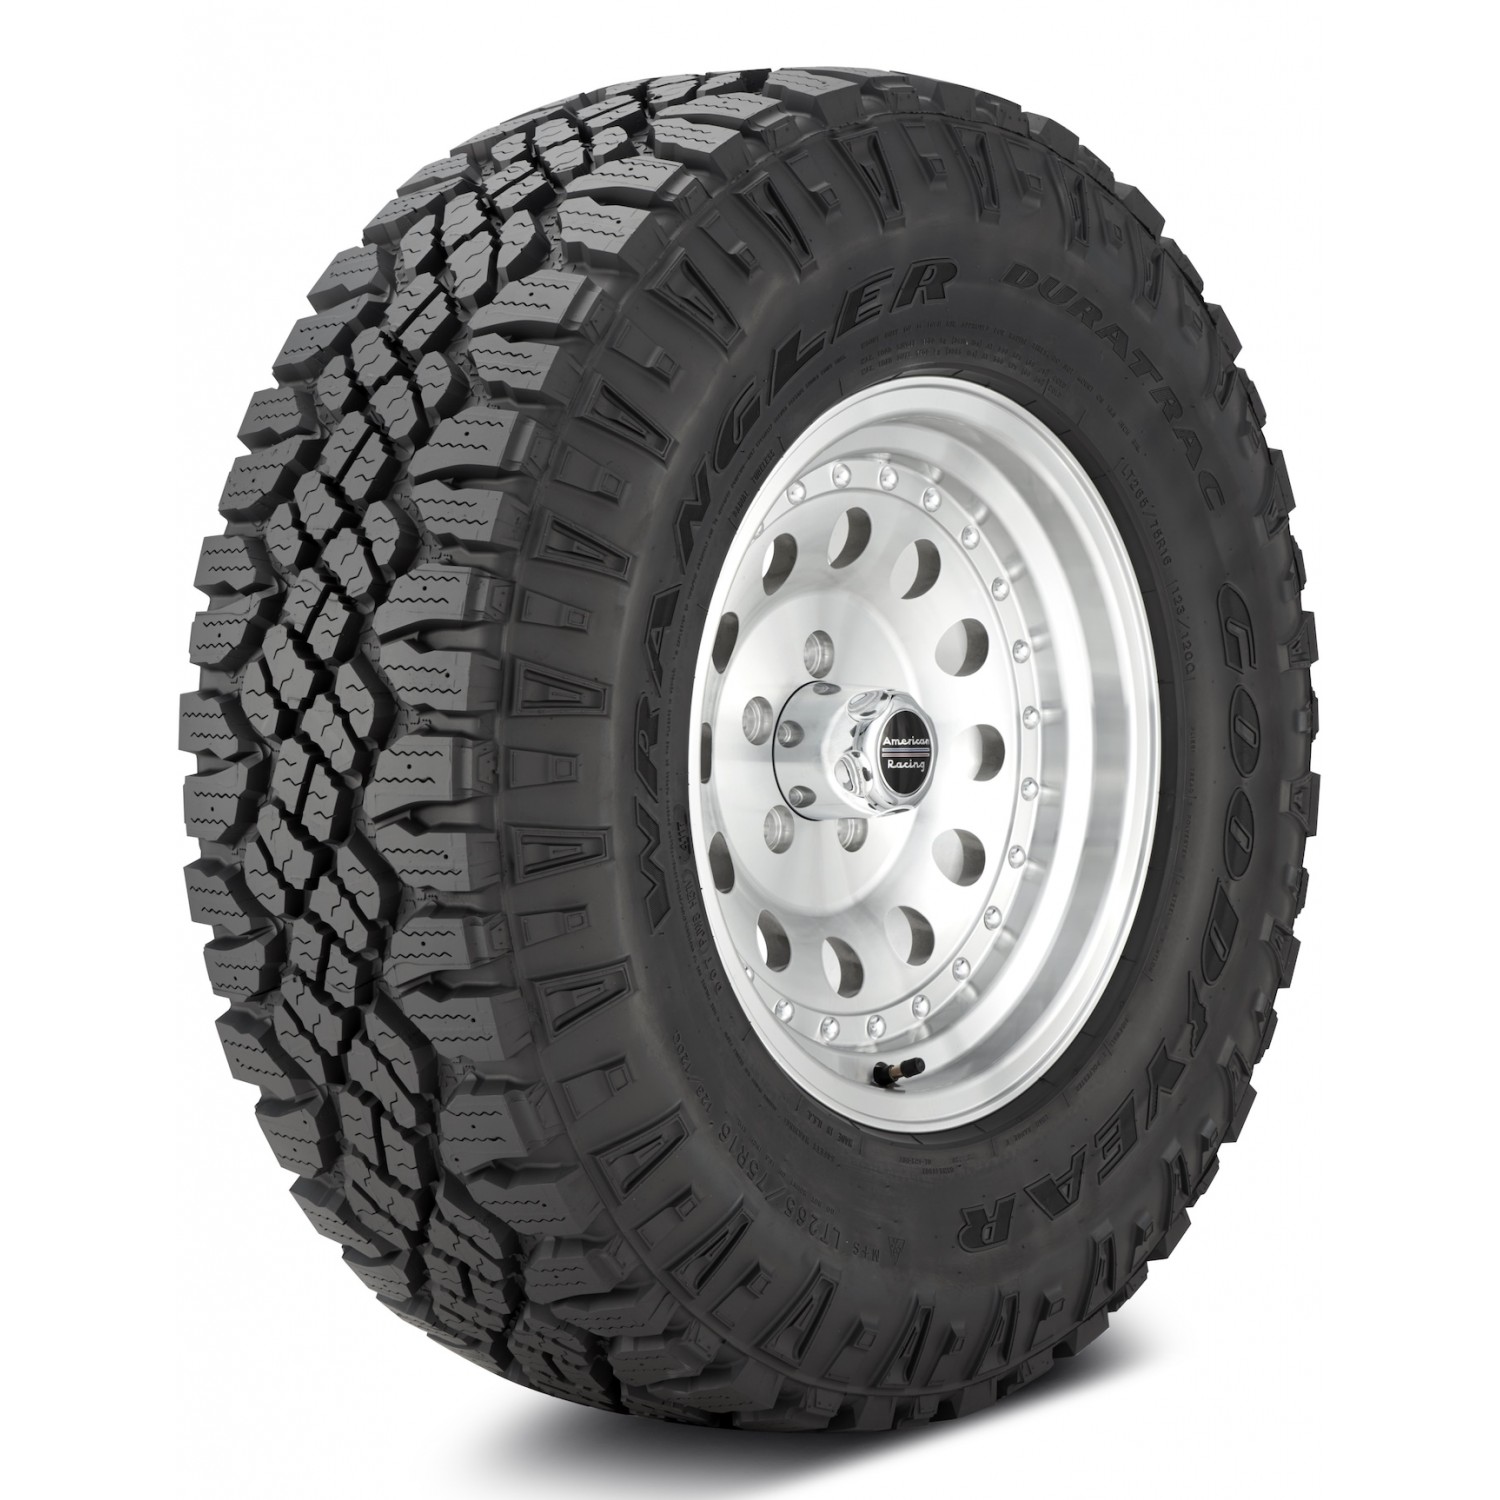 Goodyear Wrangler DuraTrac Black Sidewall Tire (LT315/70R17 121Q) vzn121165